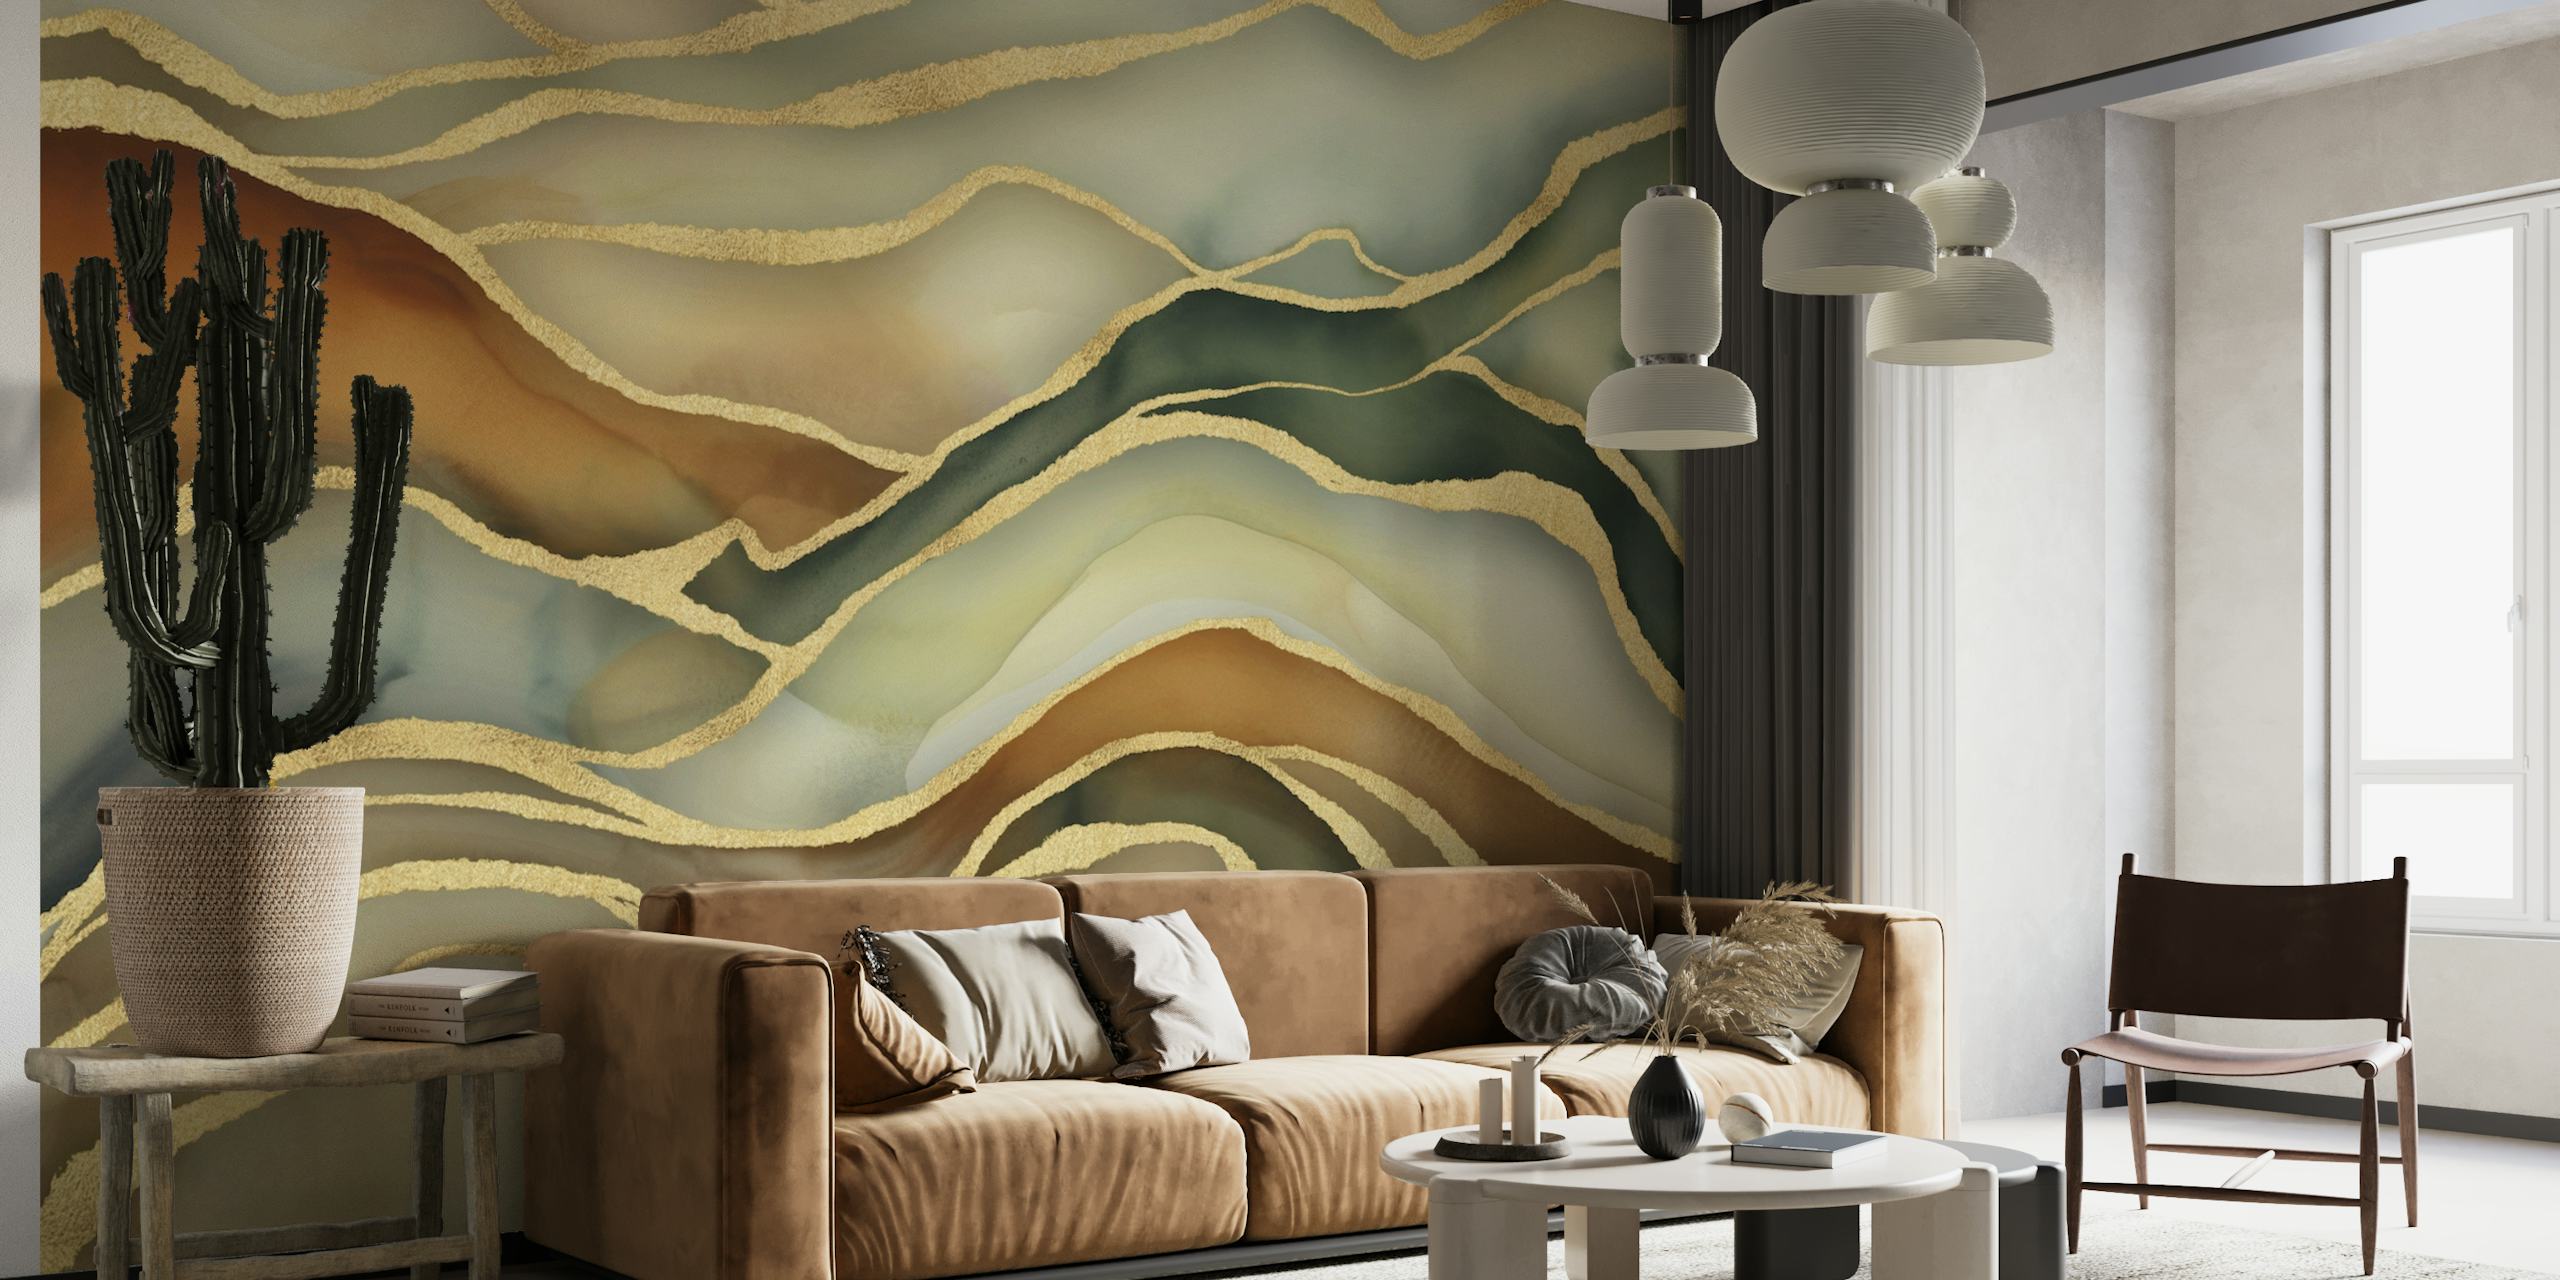 Fotomural abstracto con paisaje de mármol en tonos marrones, verdes y dorados